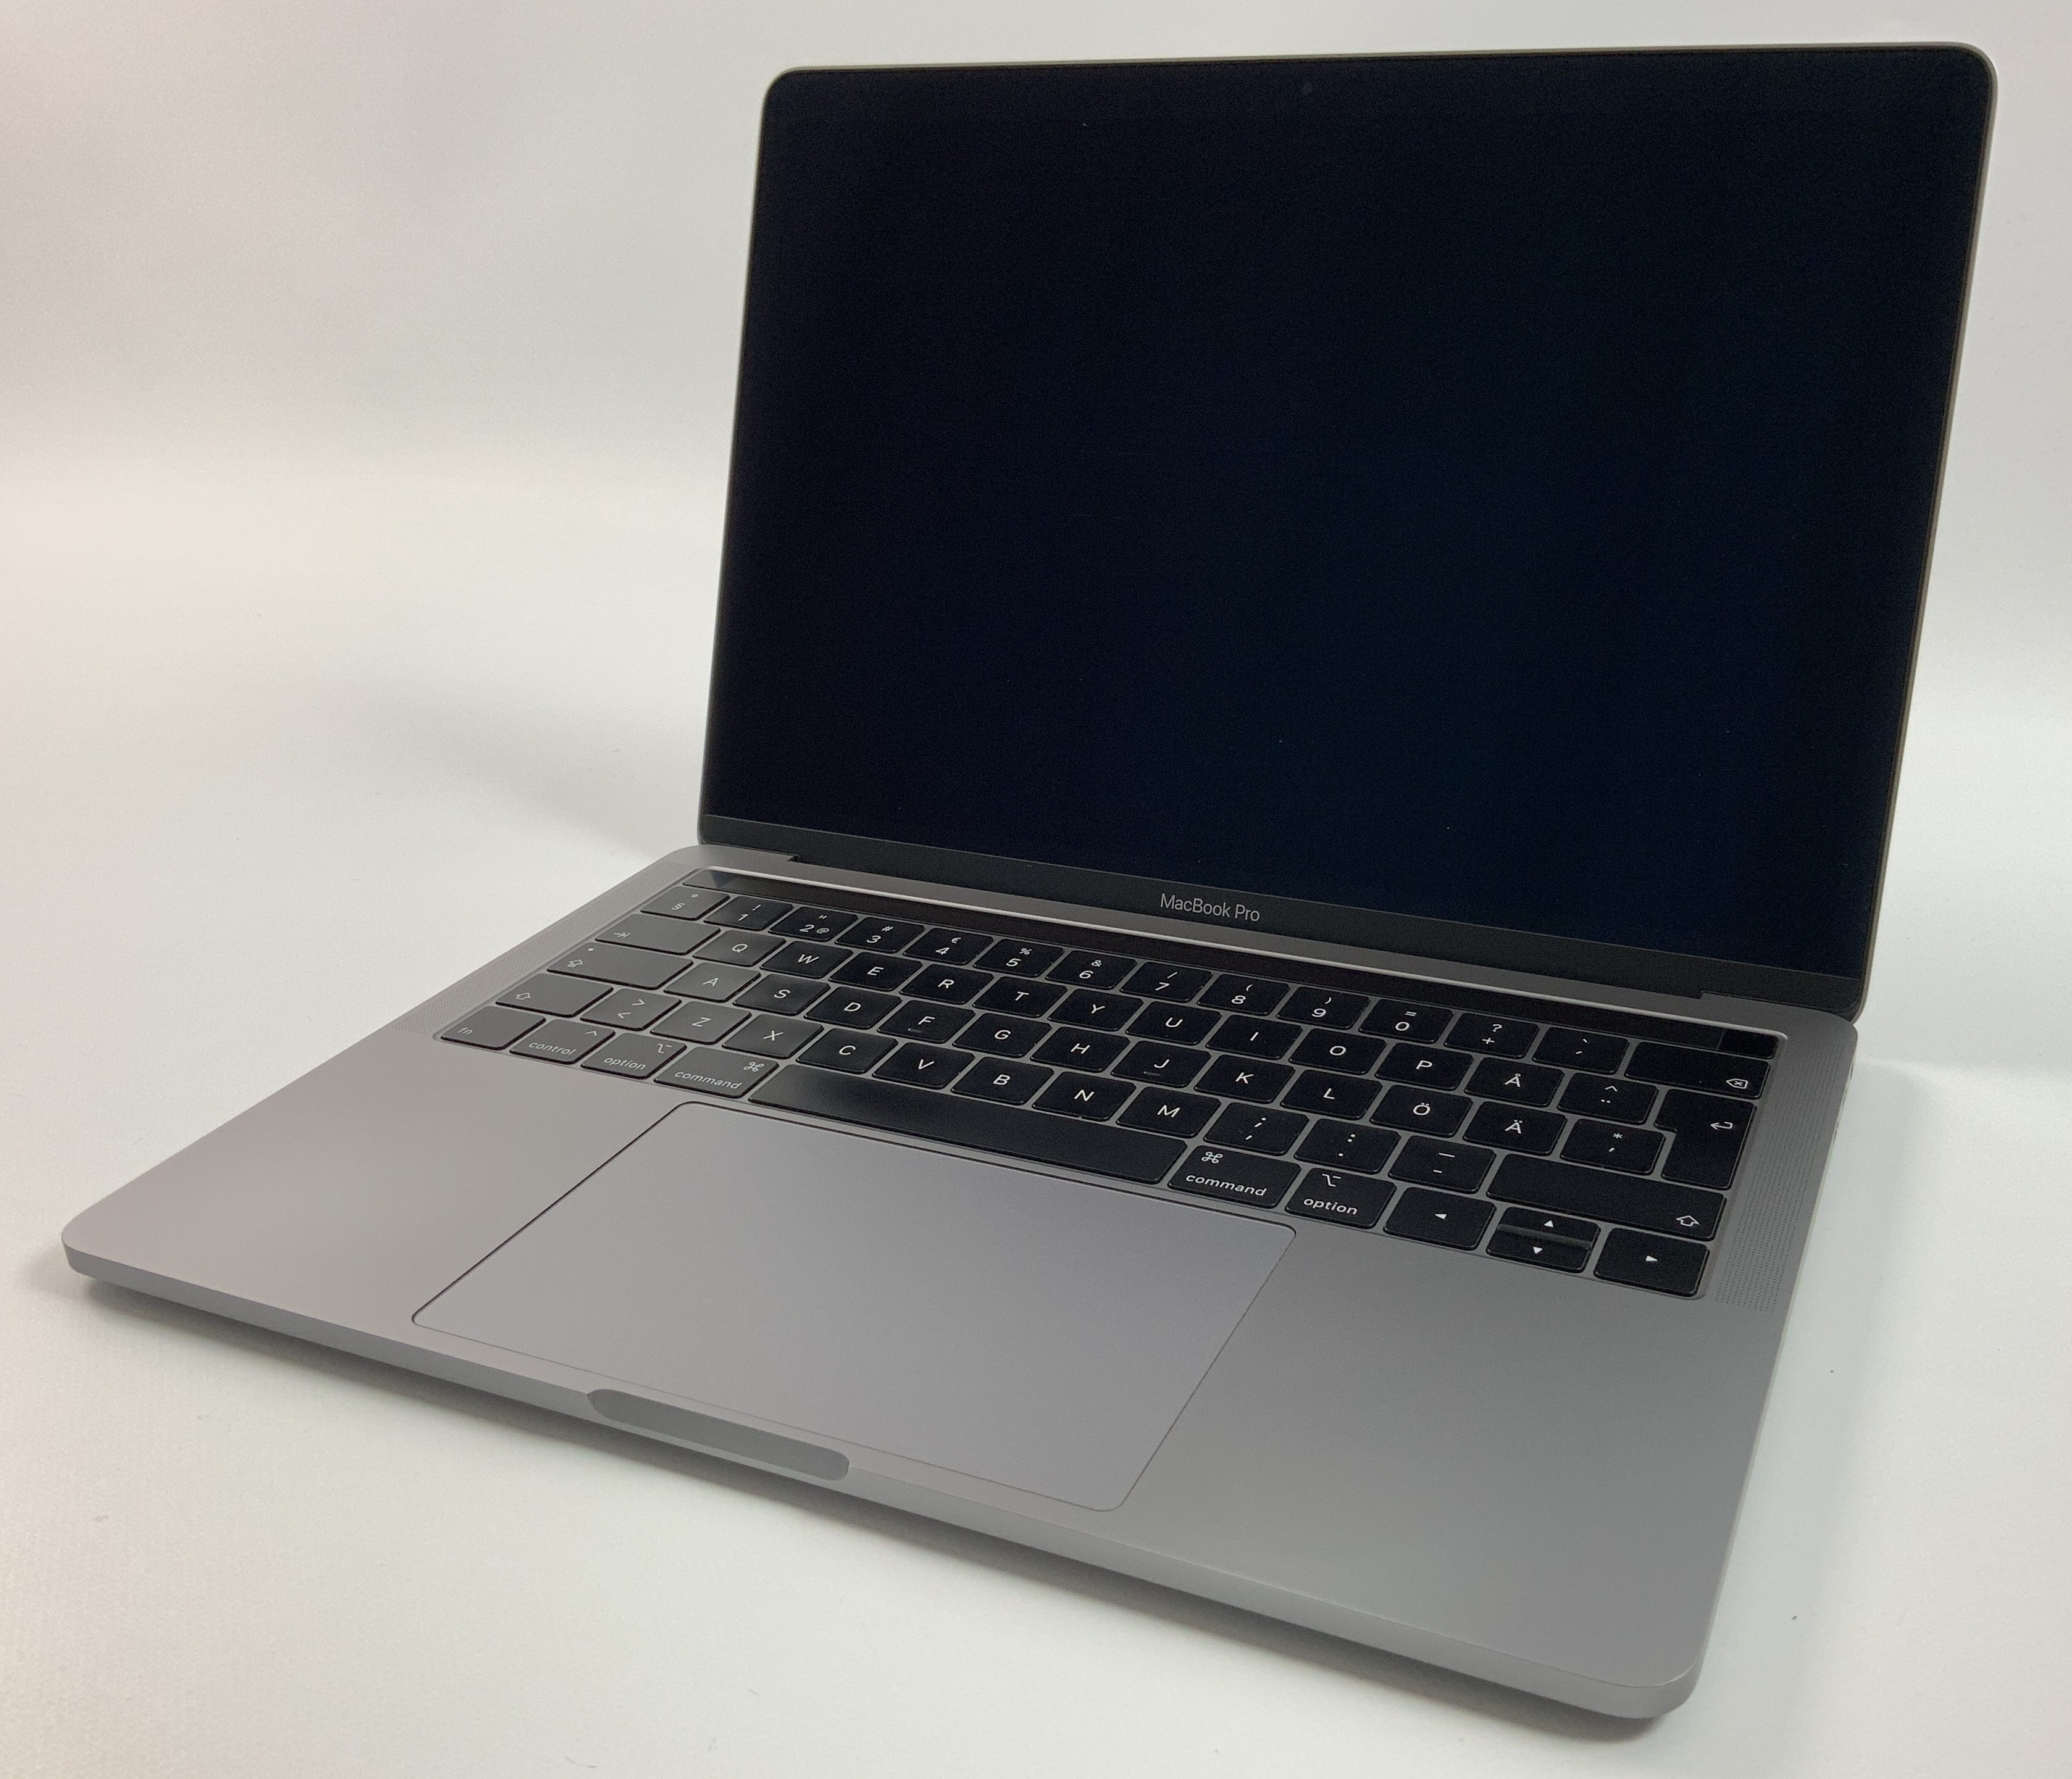 MacBook Pro 13" 4TBT Mid 2019 (Intel Quad-Core i5 2.4 GHz 16 GB RAM 512 GB SSD), Space Gray, Intel Quad-Core i5 2.4 GHz, 16 GB RAM, 512 GB SSD, immagine 1